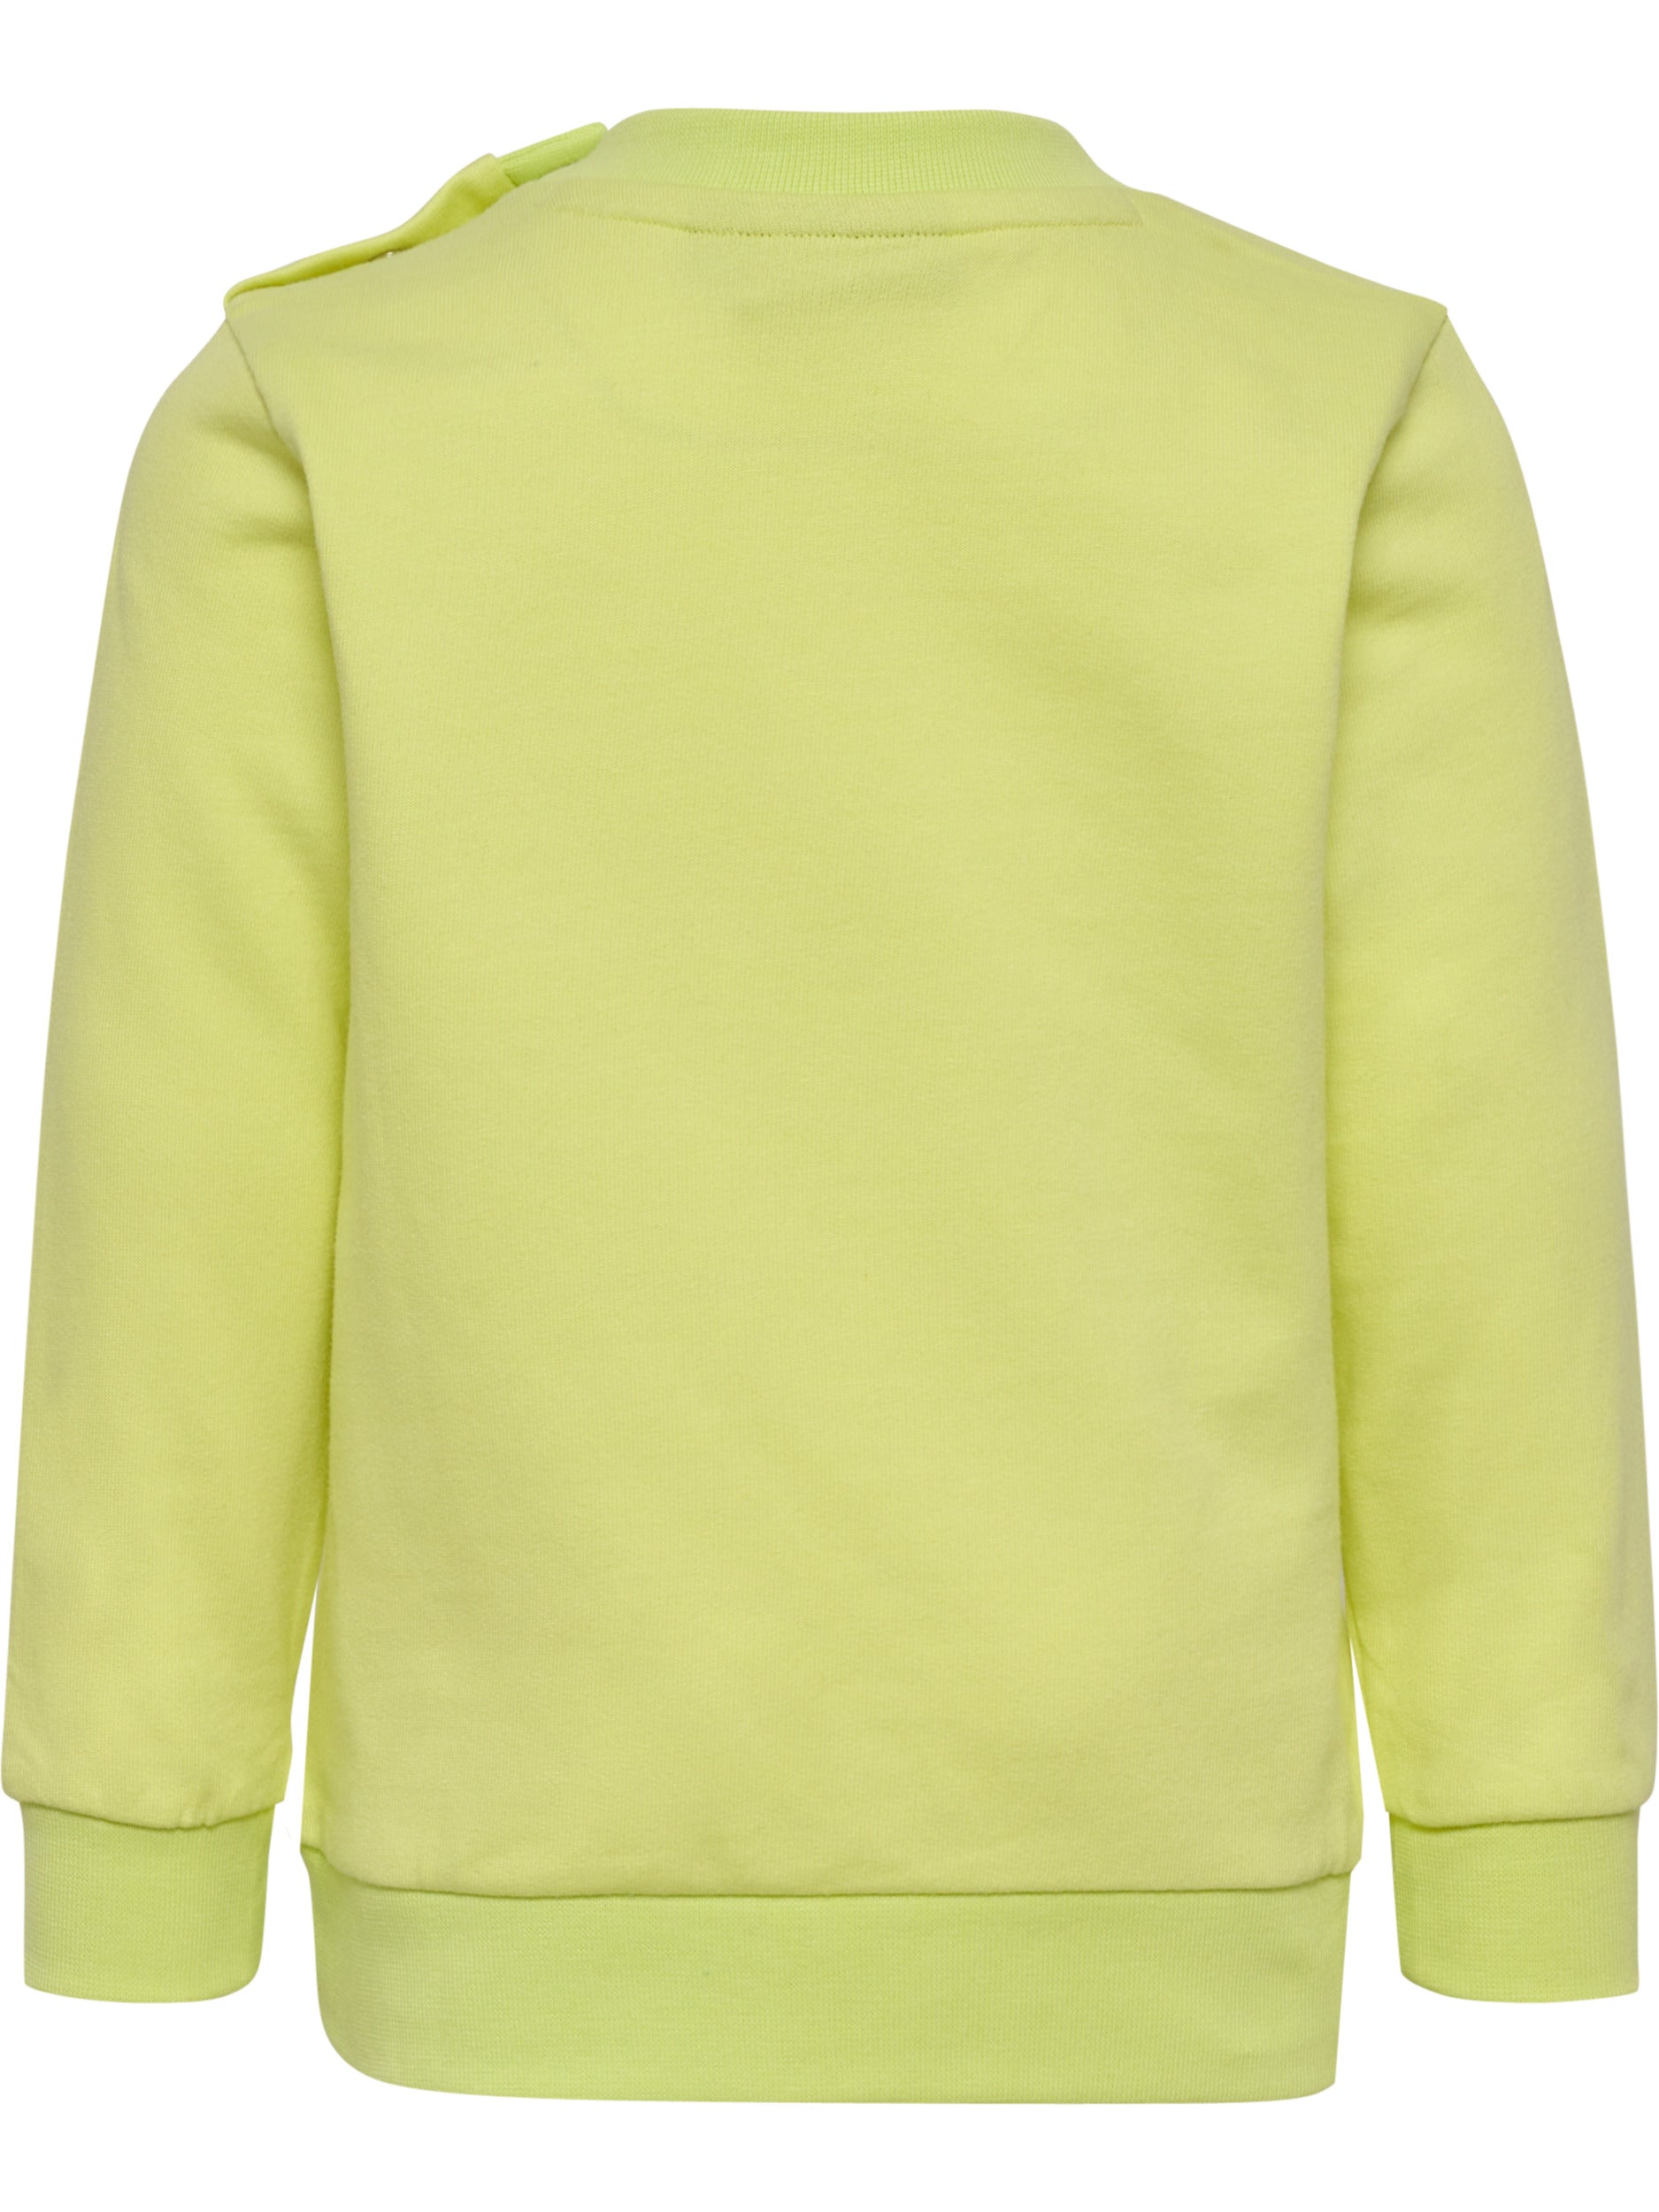 Hummel Sweatshirt Lime